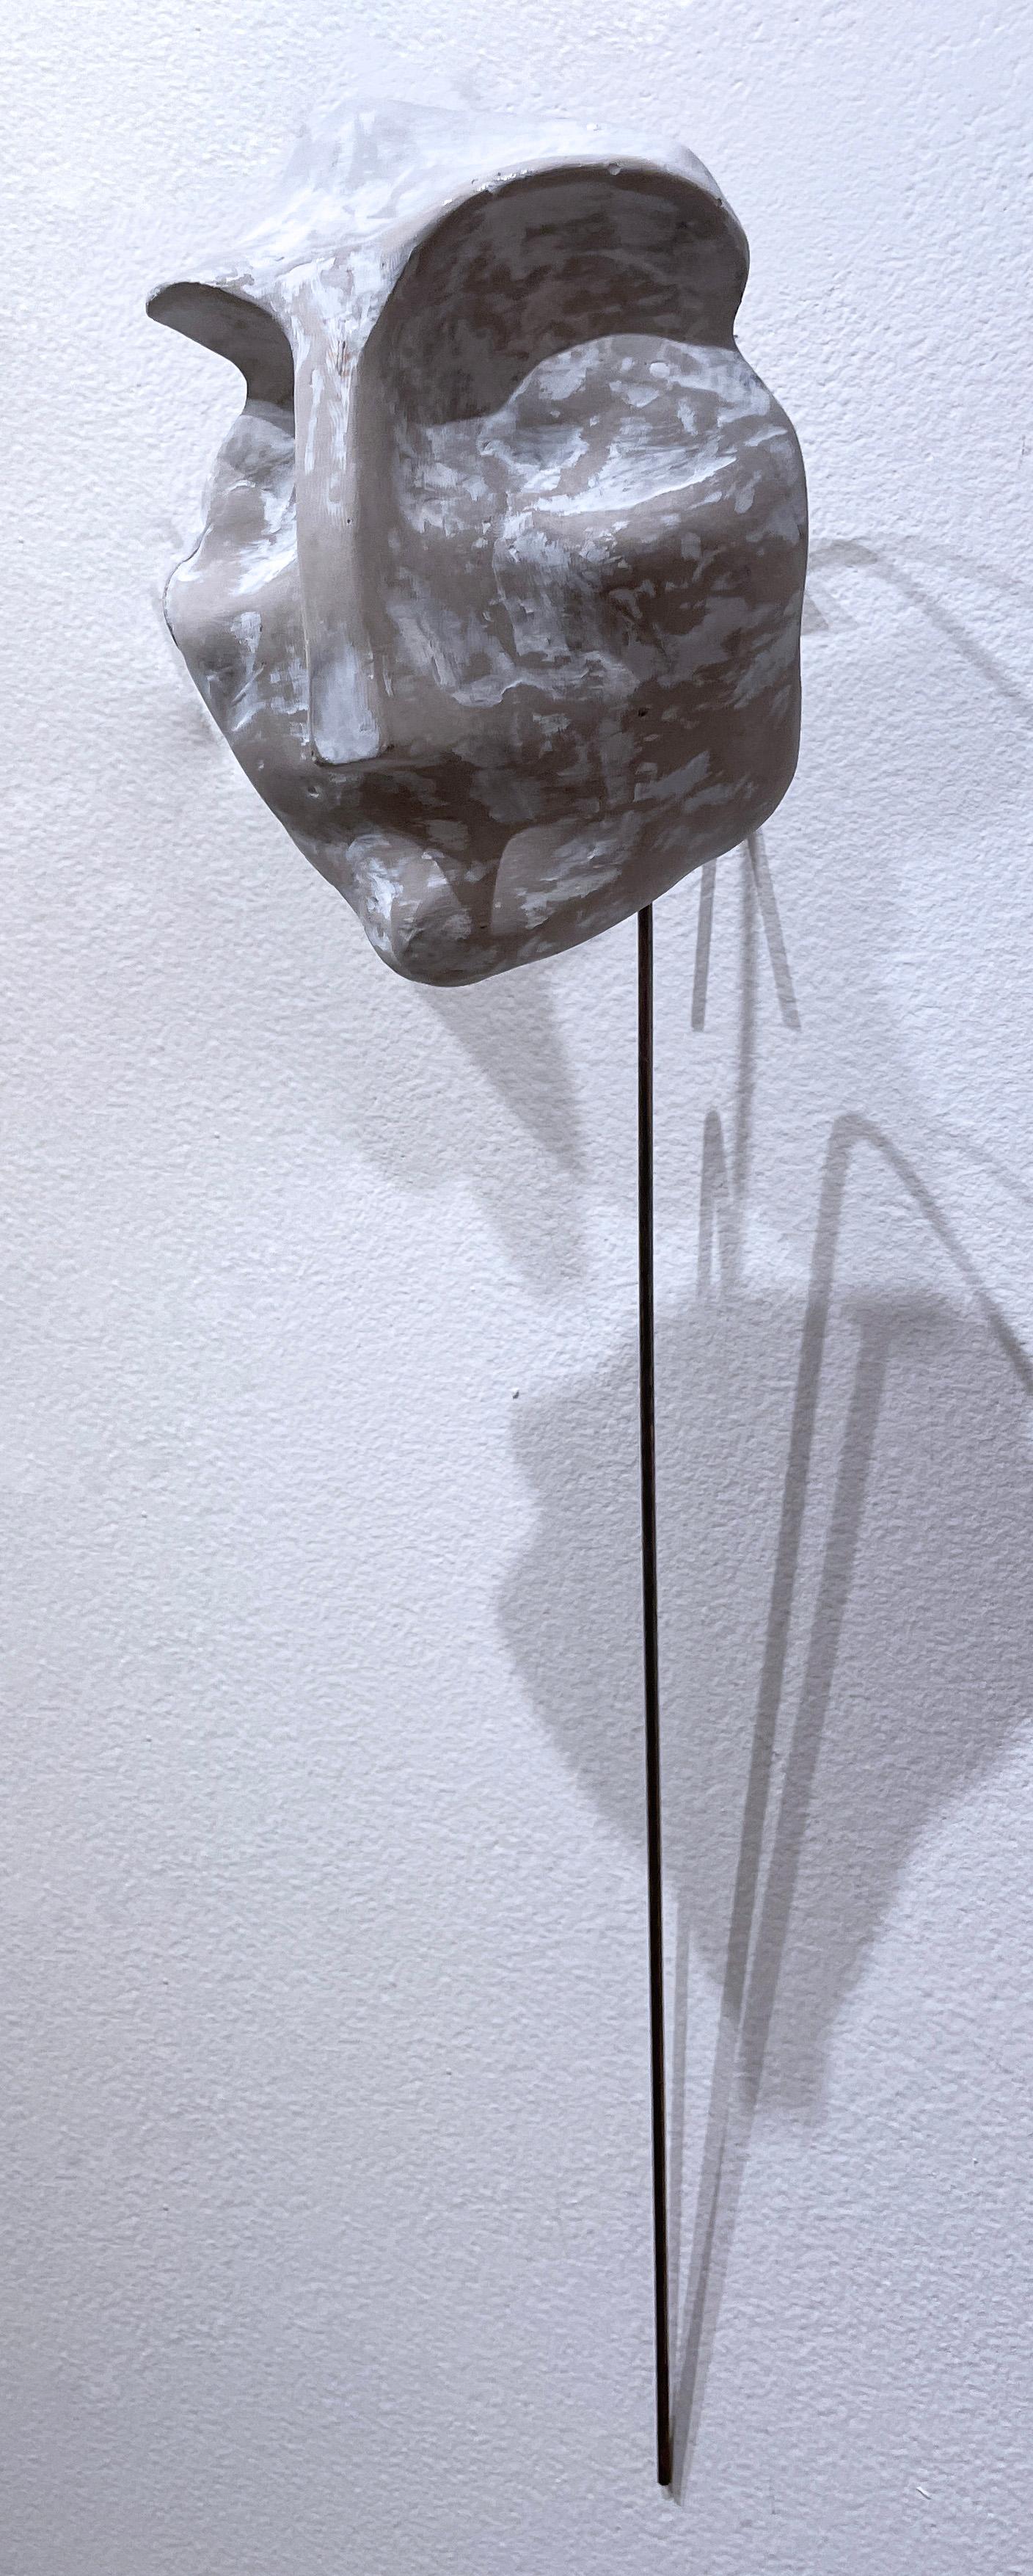 Sage blanchi à la chaux (2022), sculpture de visage en béton blanc gris, fil métallique, terreux - Violet Figurative Sculpture par Dena Paige Fischer